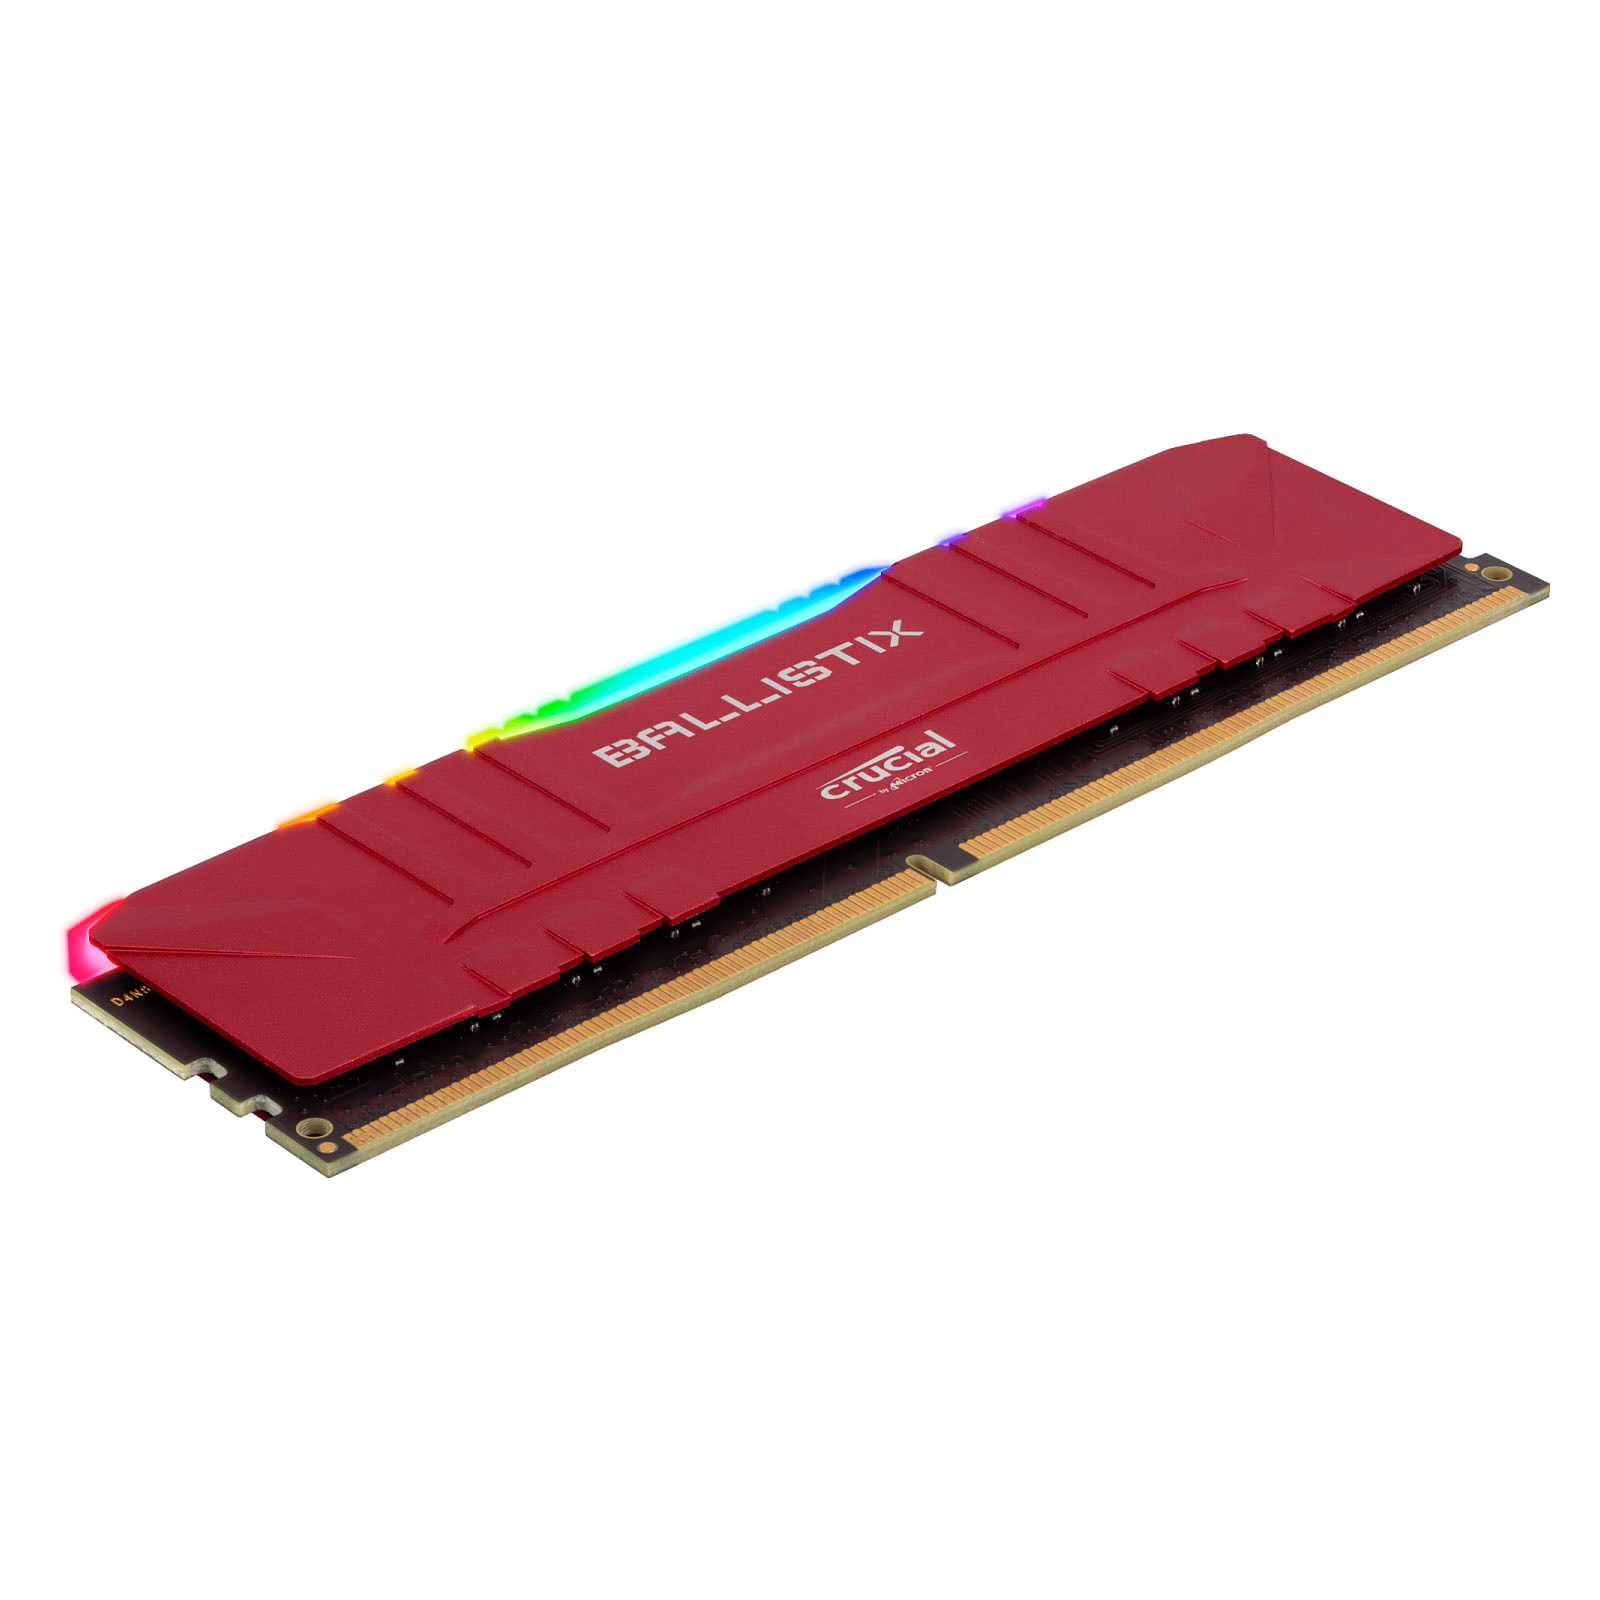 Ballistix Red RGB 16Go (2x8Go) DDR4 3200MHz - Mémoire PC Ballistix sur grosbill-pro.com - 1